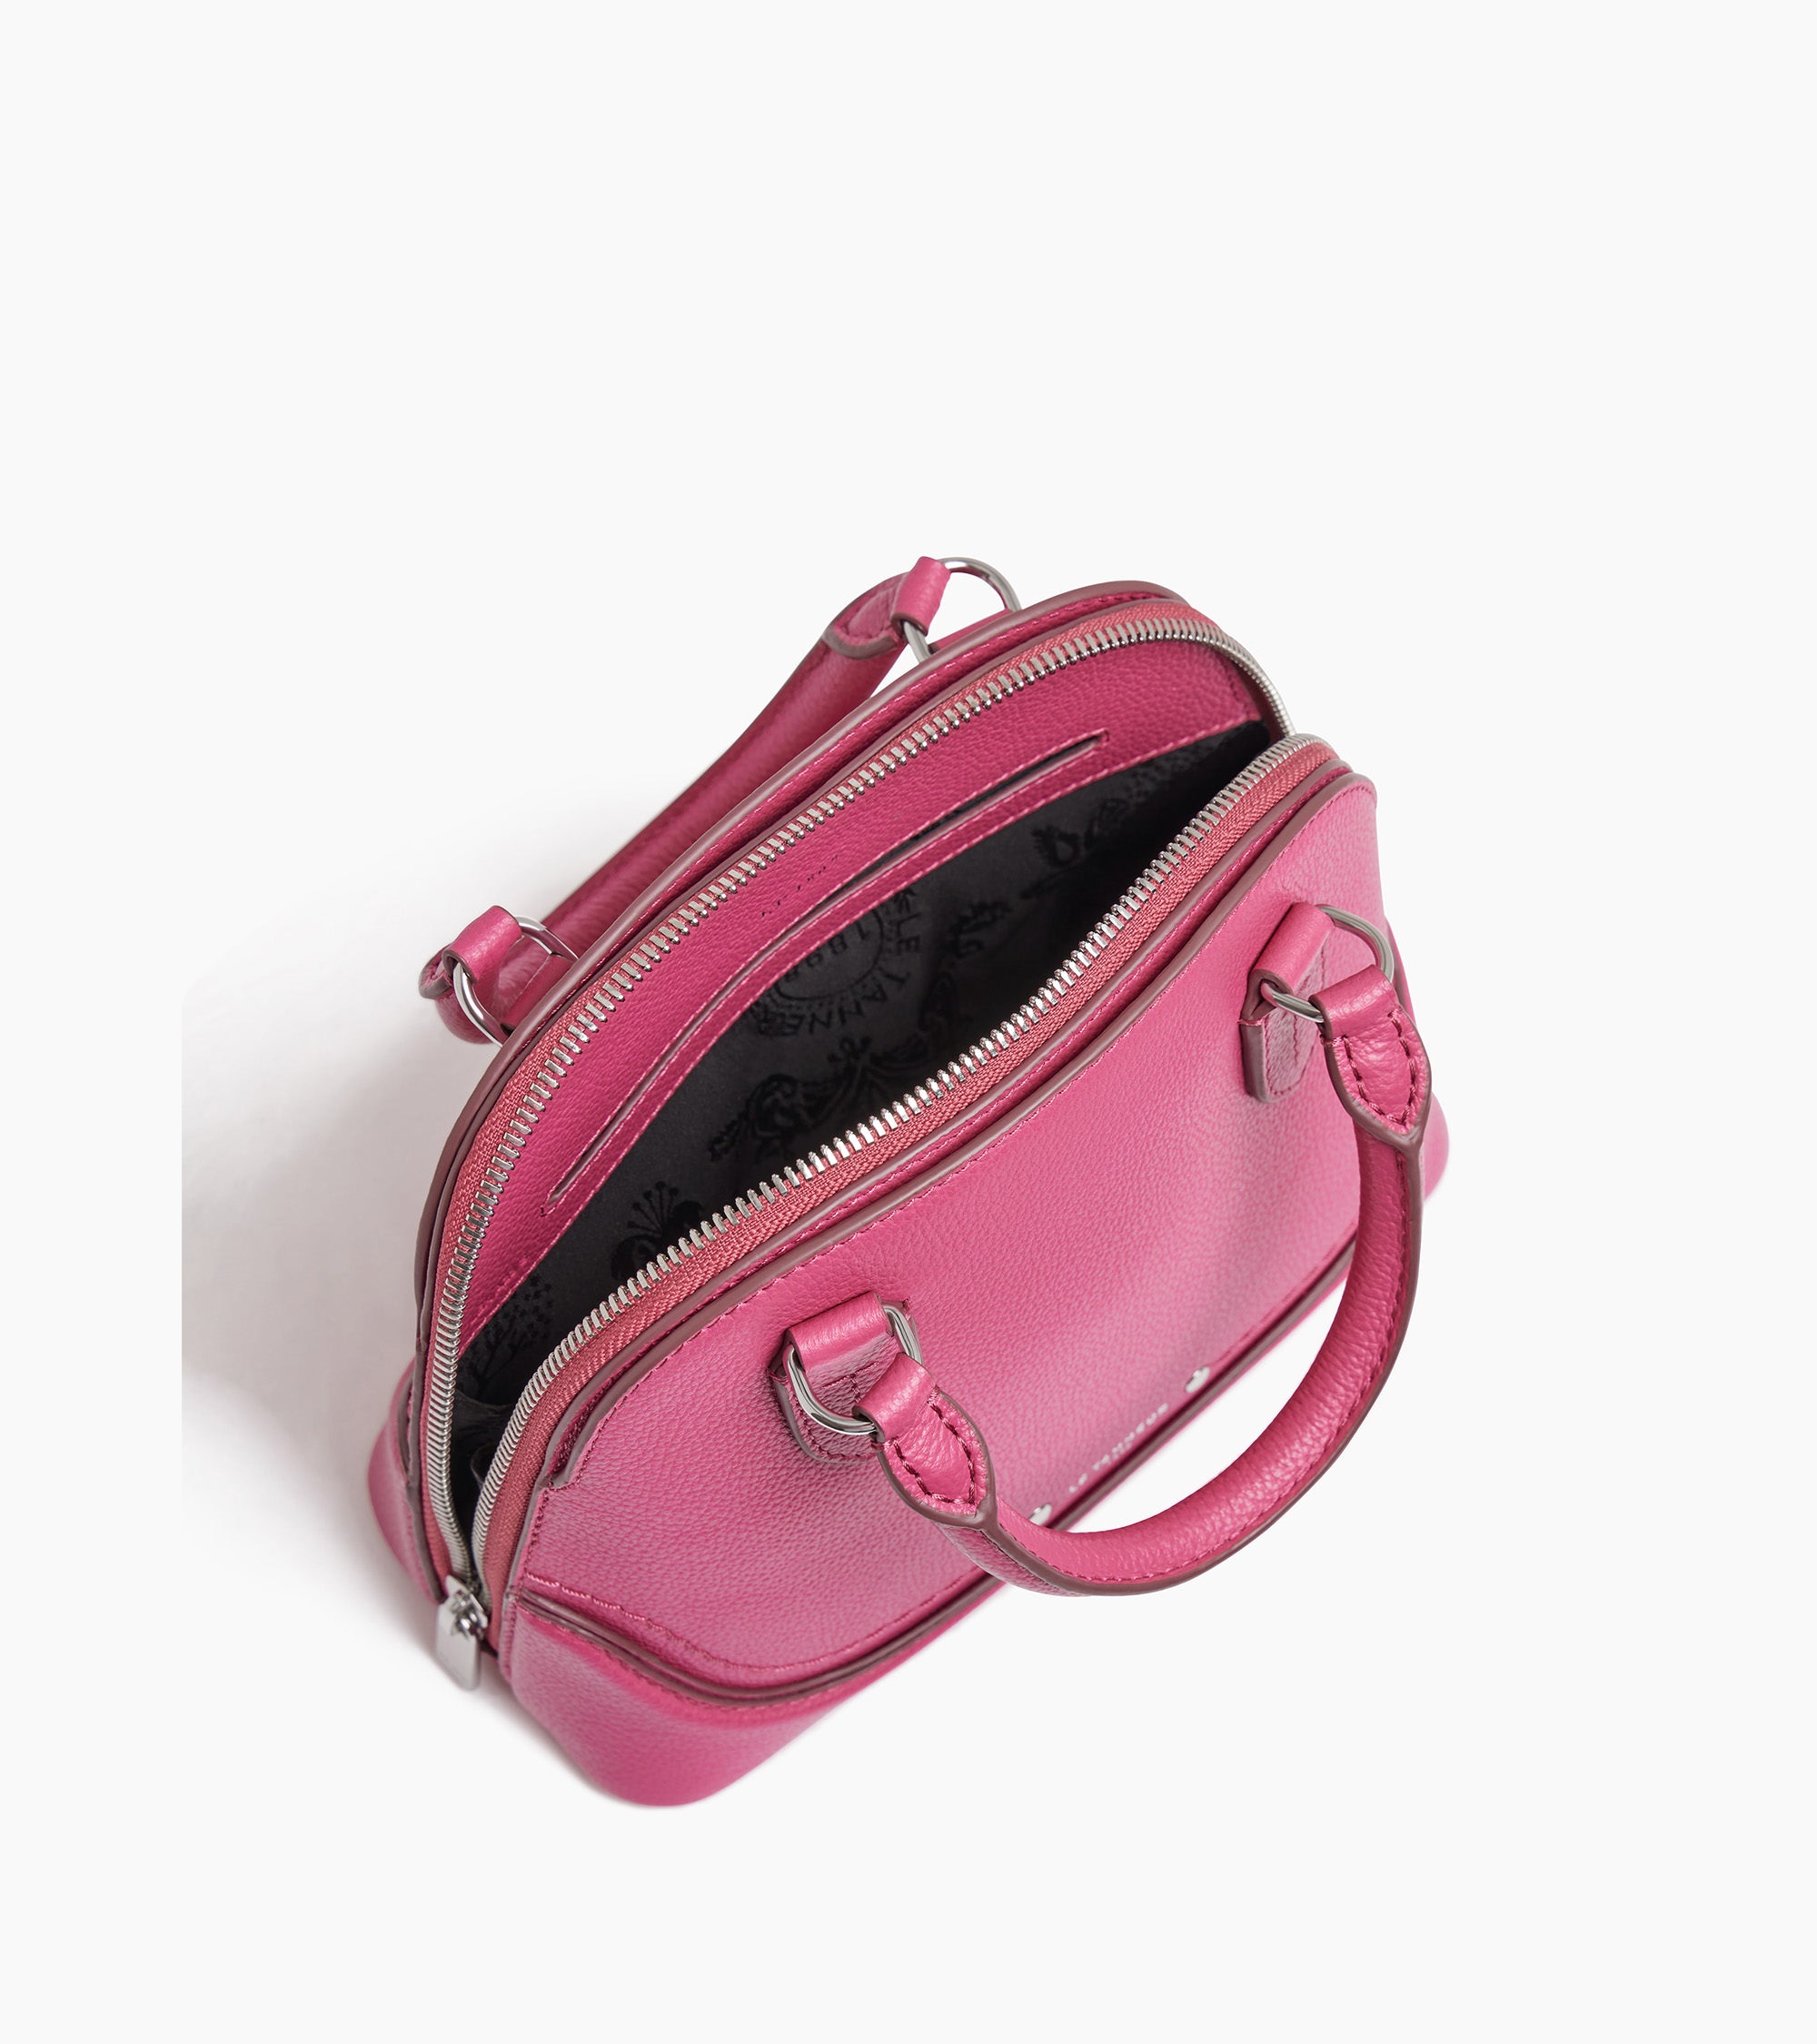 Ella small handbag in grained leather